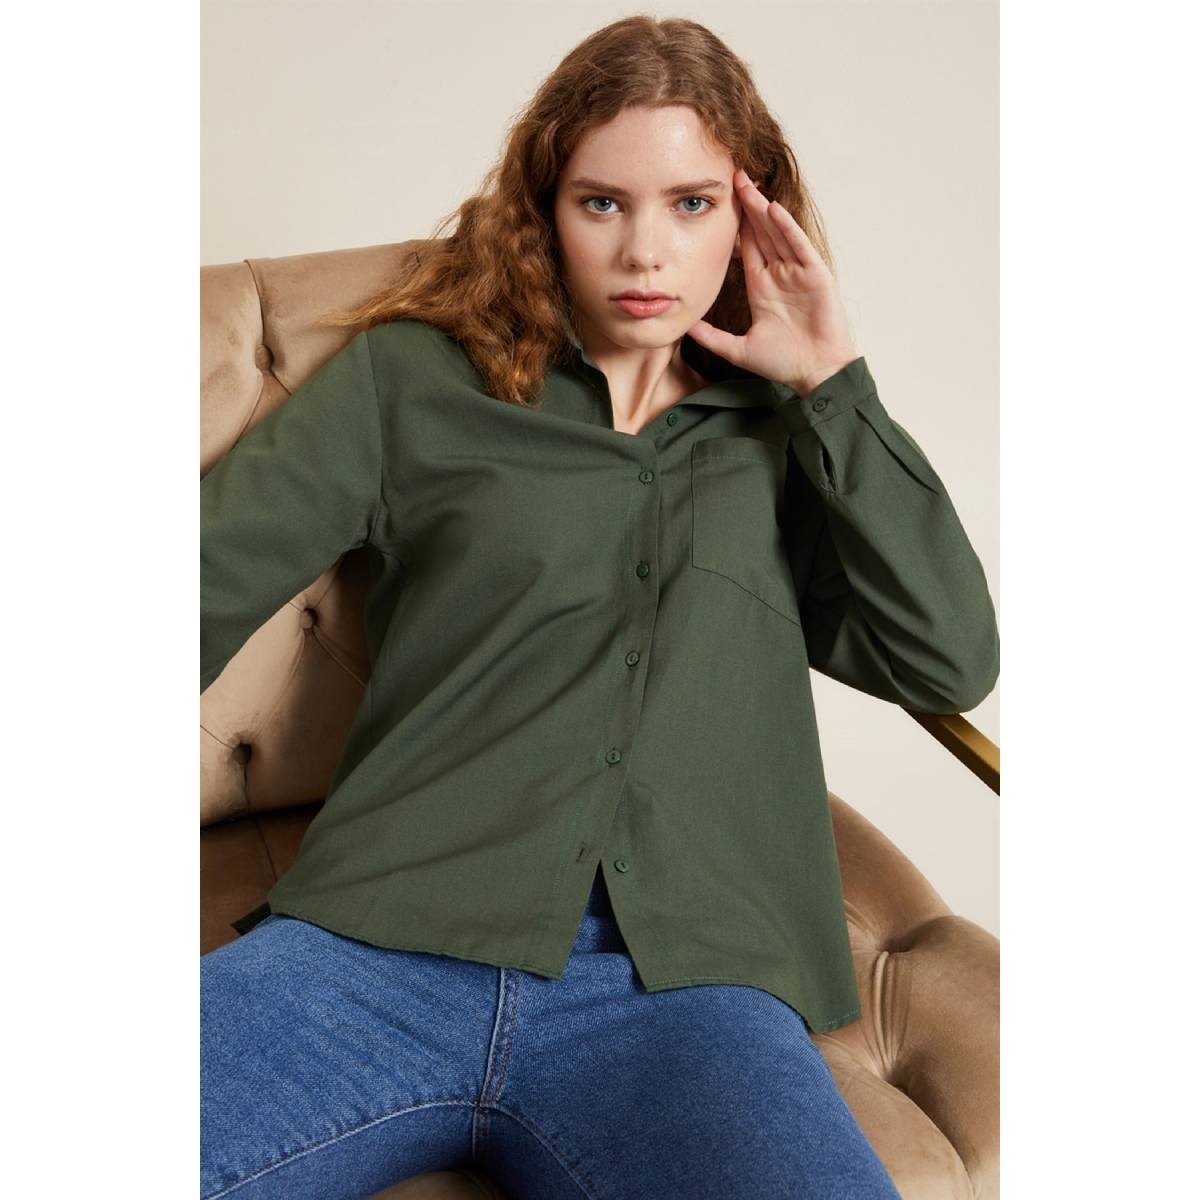 Flo Kadın Yeşil Önü Kısa Arkası Uzun Oversize Gömlek. 2